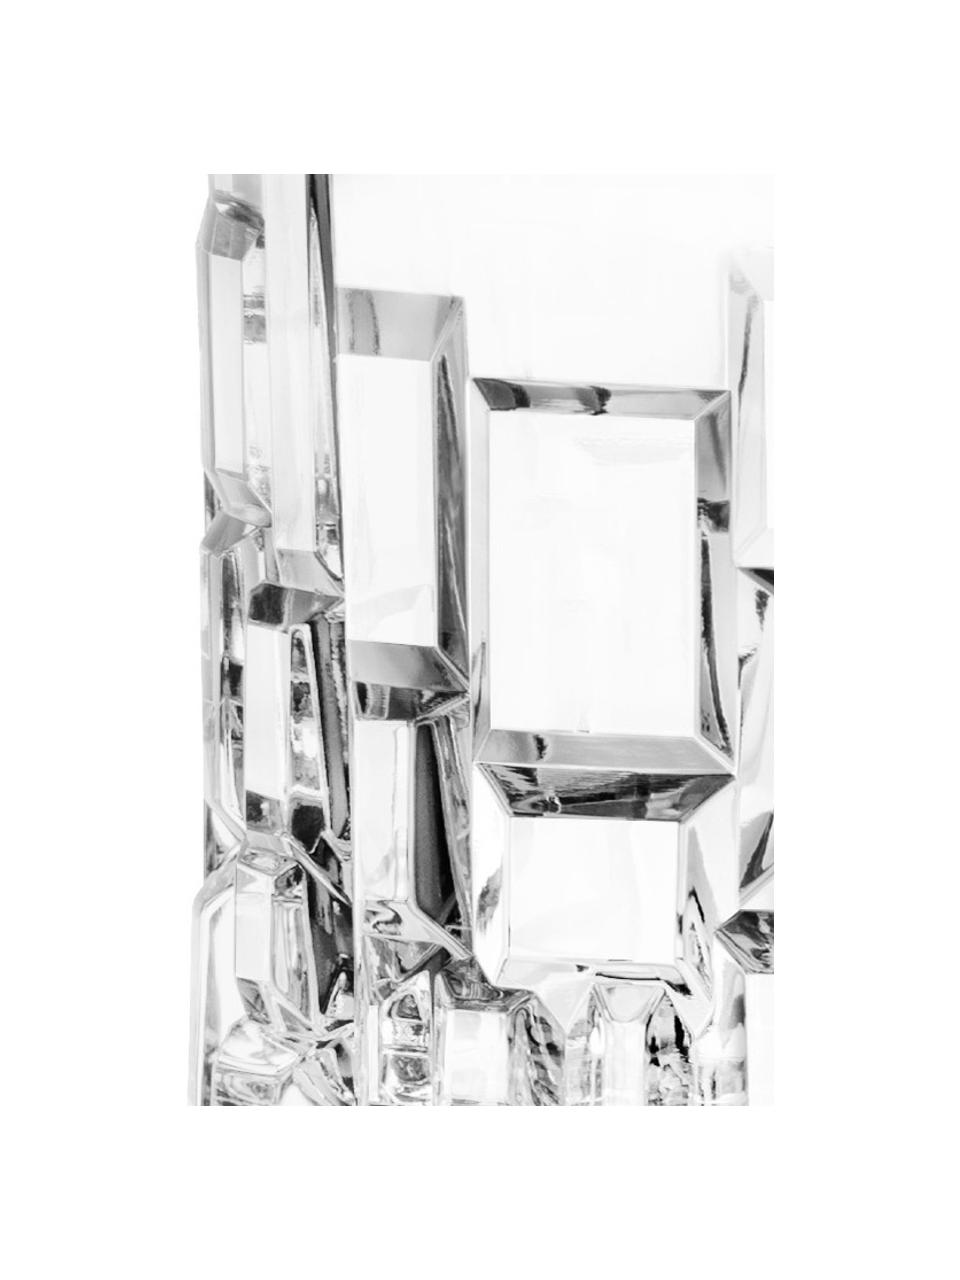 Vasos old fashioned de cristal Etna, 6 uds., Cristal, Transparente, Ø 8 x Al 9 cm, 320 ml